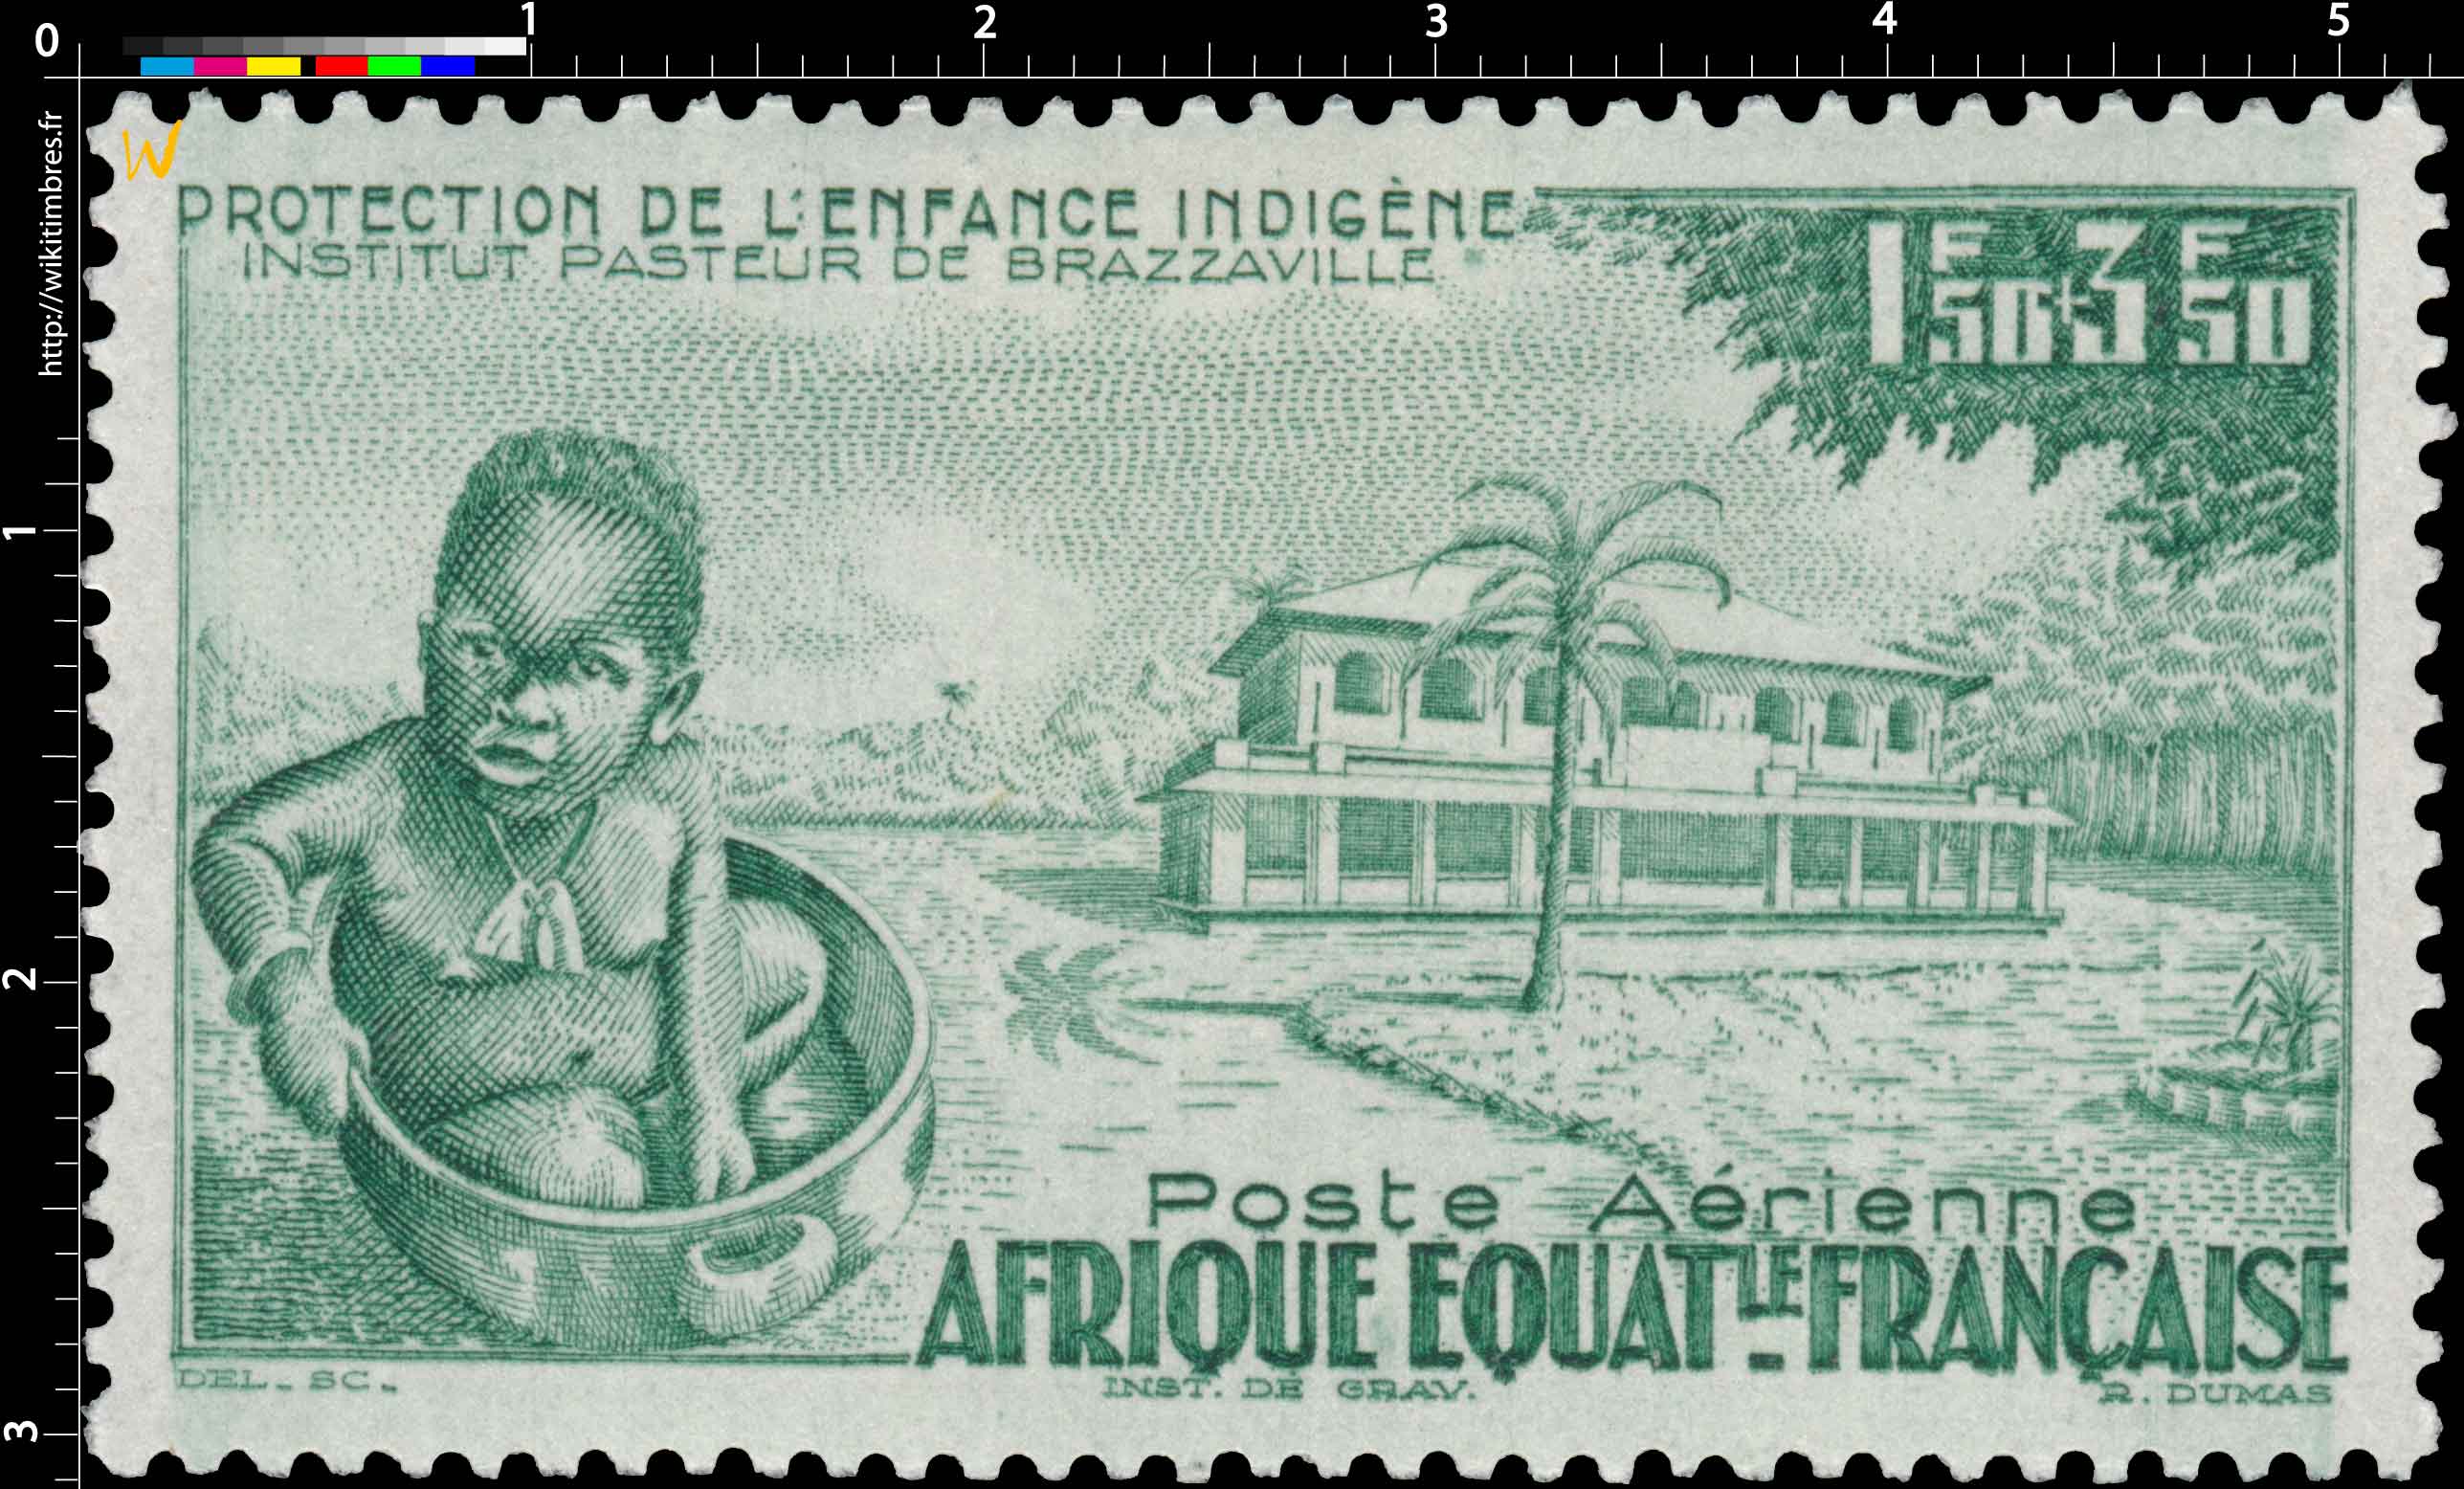 Protection de l'enfance indigène Institut pasteur de Brazzaville Afrique Équatoriale Française 